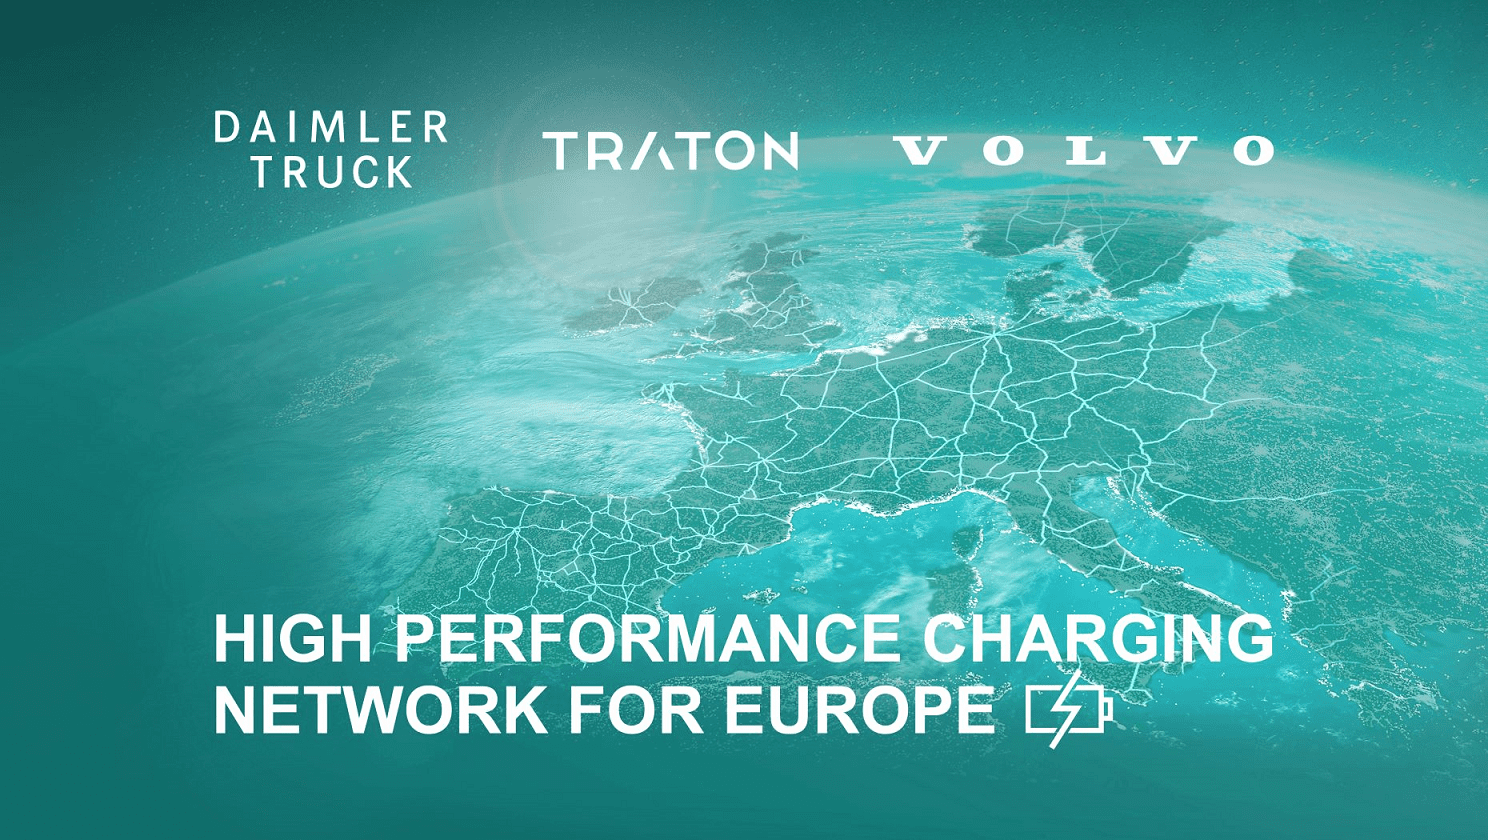 Volvokoncernen, Daimler Truck och TRATON GROUP startar samriskföretag för laddinfrastruktur i Europa